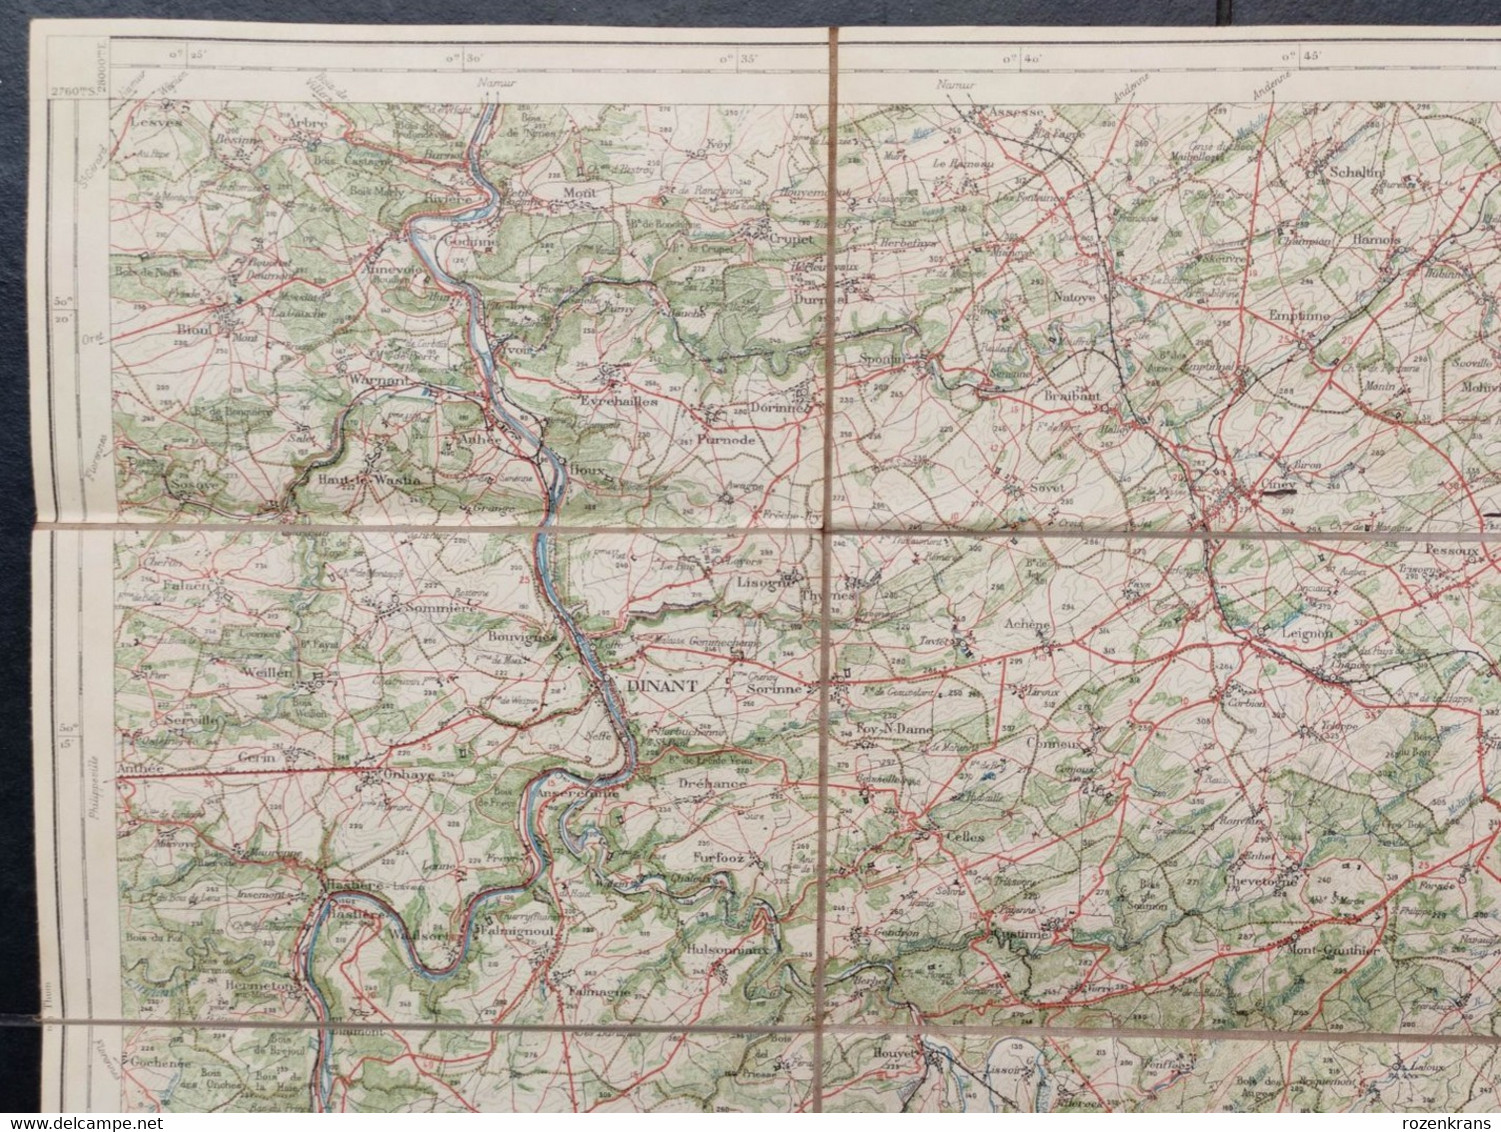 Carte topographique toilée militaire STAFKAART 1907 Dinant Hastiere Givet St Hubert Ciney Nassogne Han s Lesse Rochefort